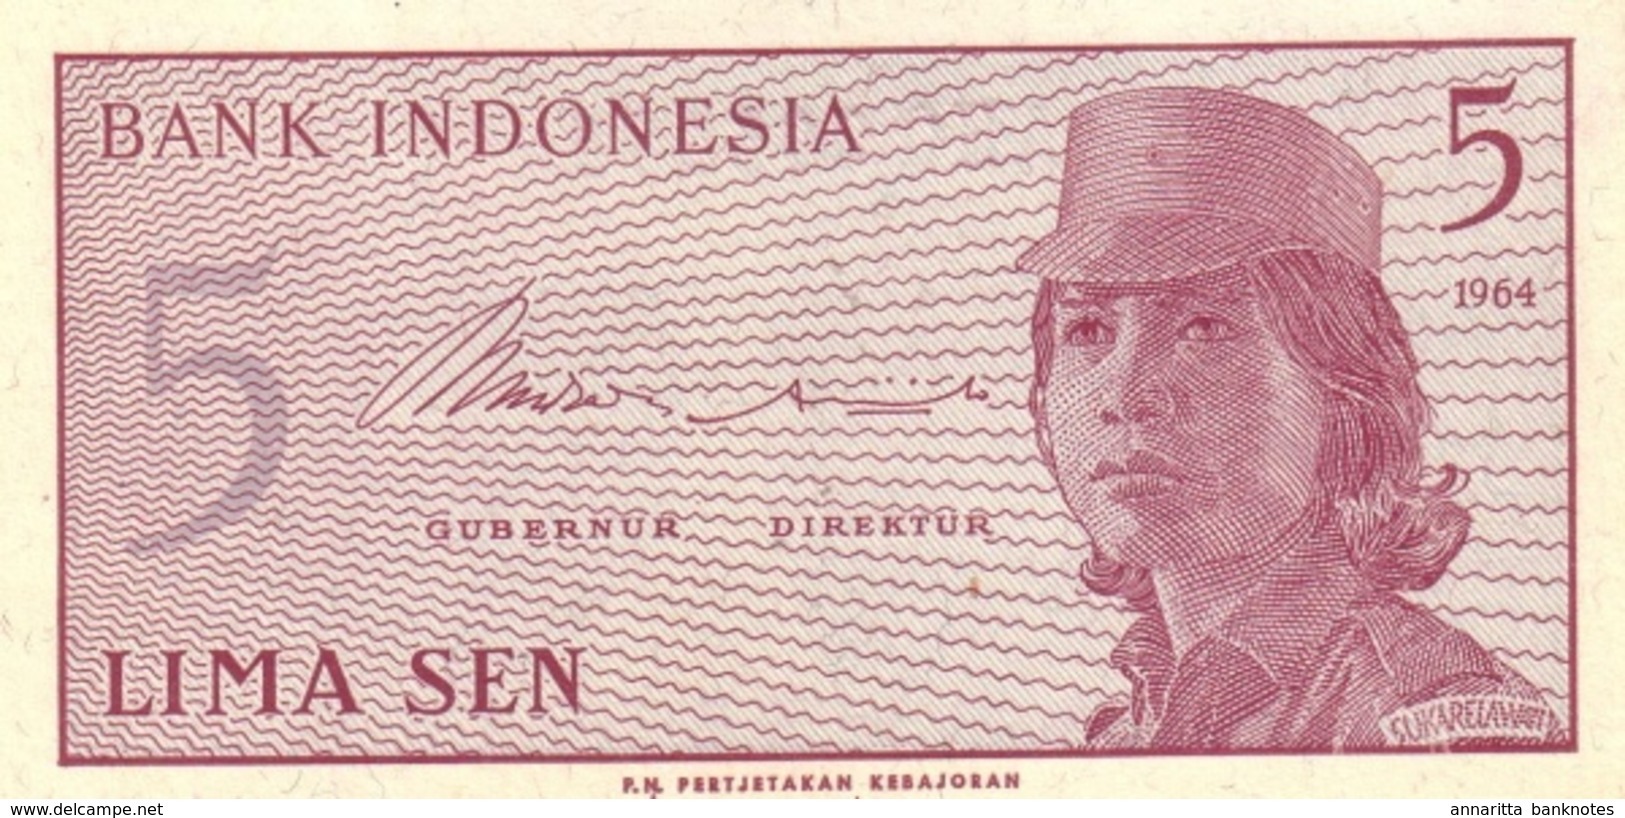 INDONESIA 5 SEN 1964 P-91 UNC  [ID544a] - Indonesia